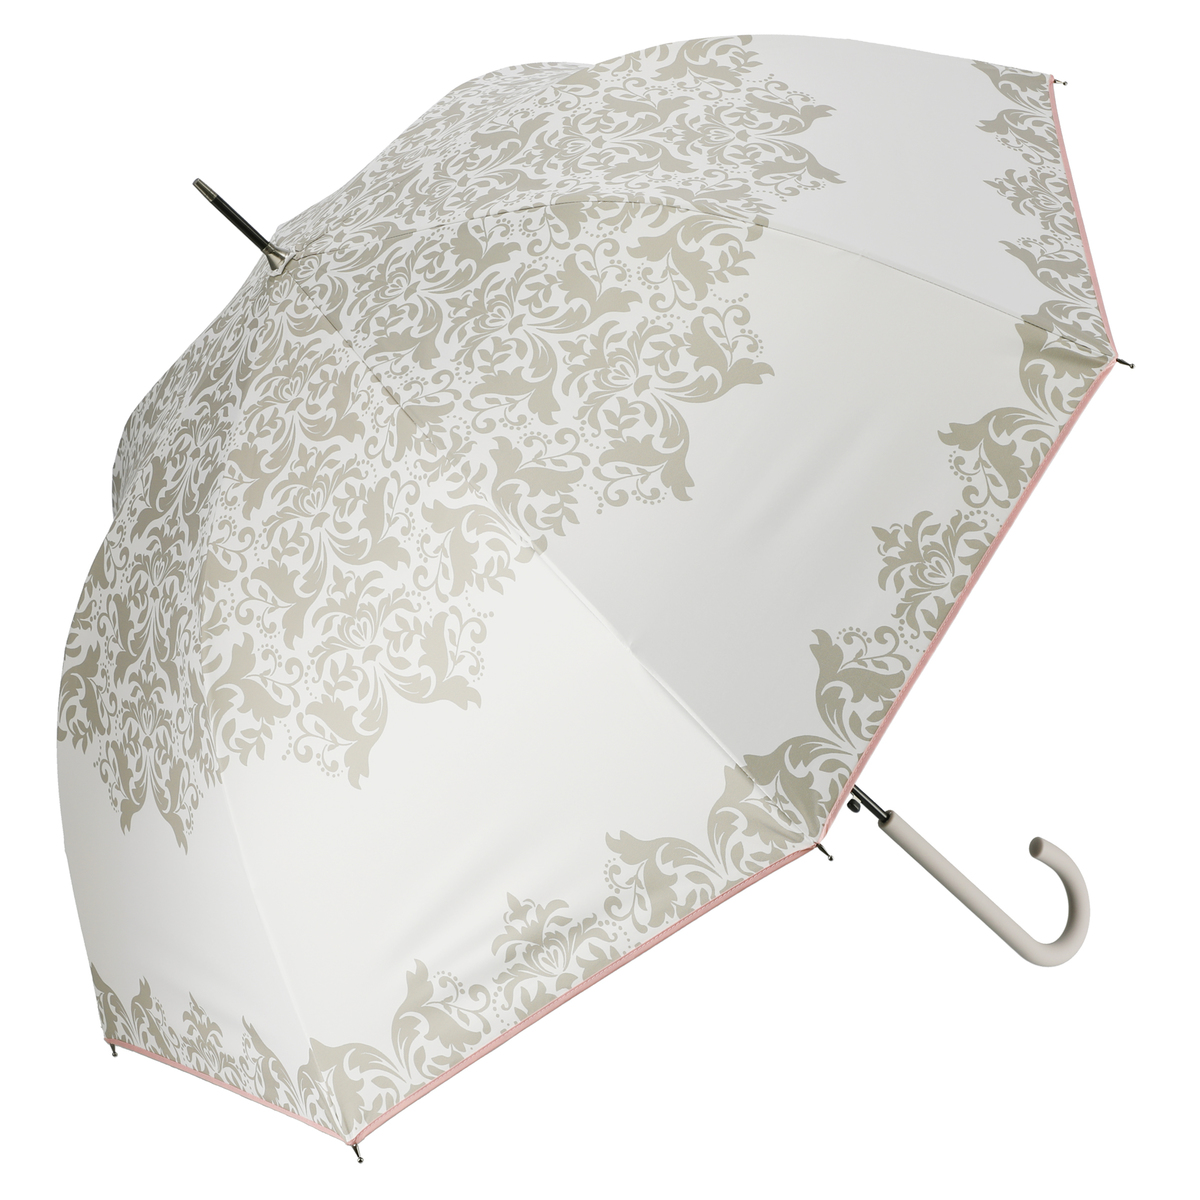  ルナジュメール UV+1級遮光+晴雨兼用 ダマスク柄長傘  オフホワイト